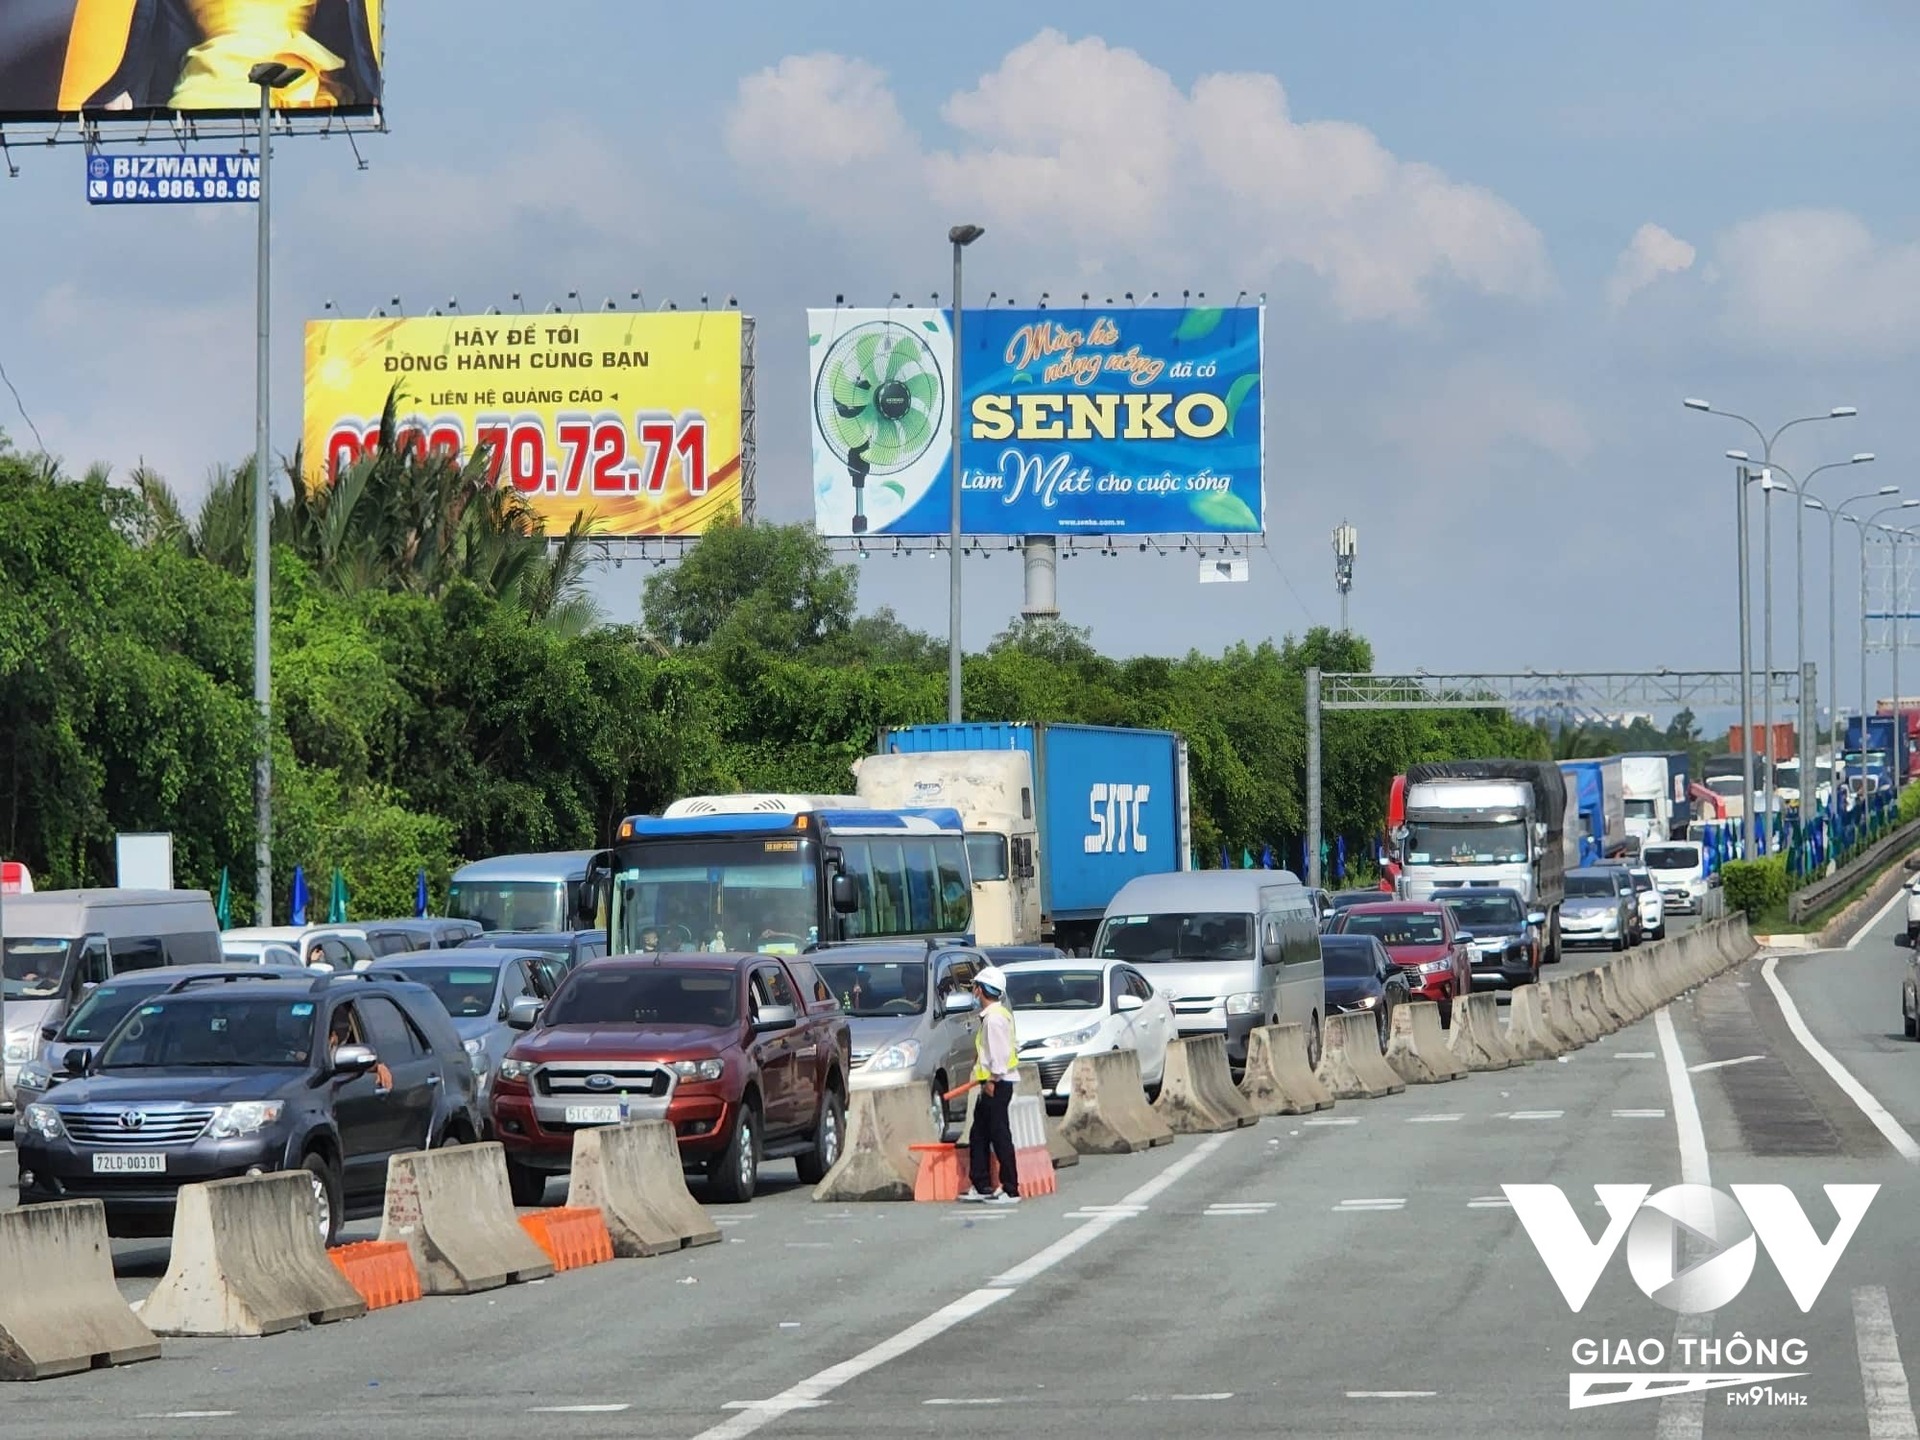 VEC sẽ điều chỉnh phí xe nhóm 4 và 5 trên cao tốc Cầu Giẽ - Ninh Bình và TP.HCM - Long Thành - Dầu Giây, dự kiến từ 0h ngày 1/9